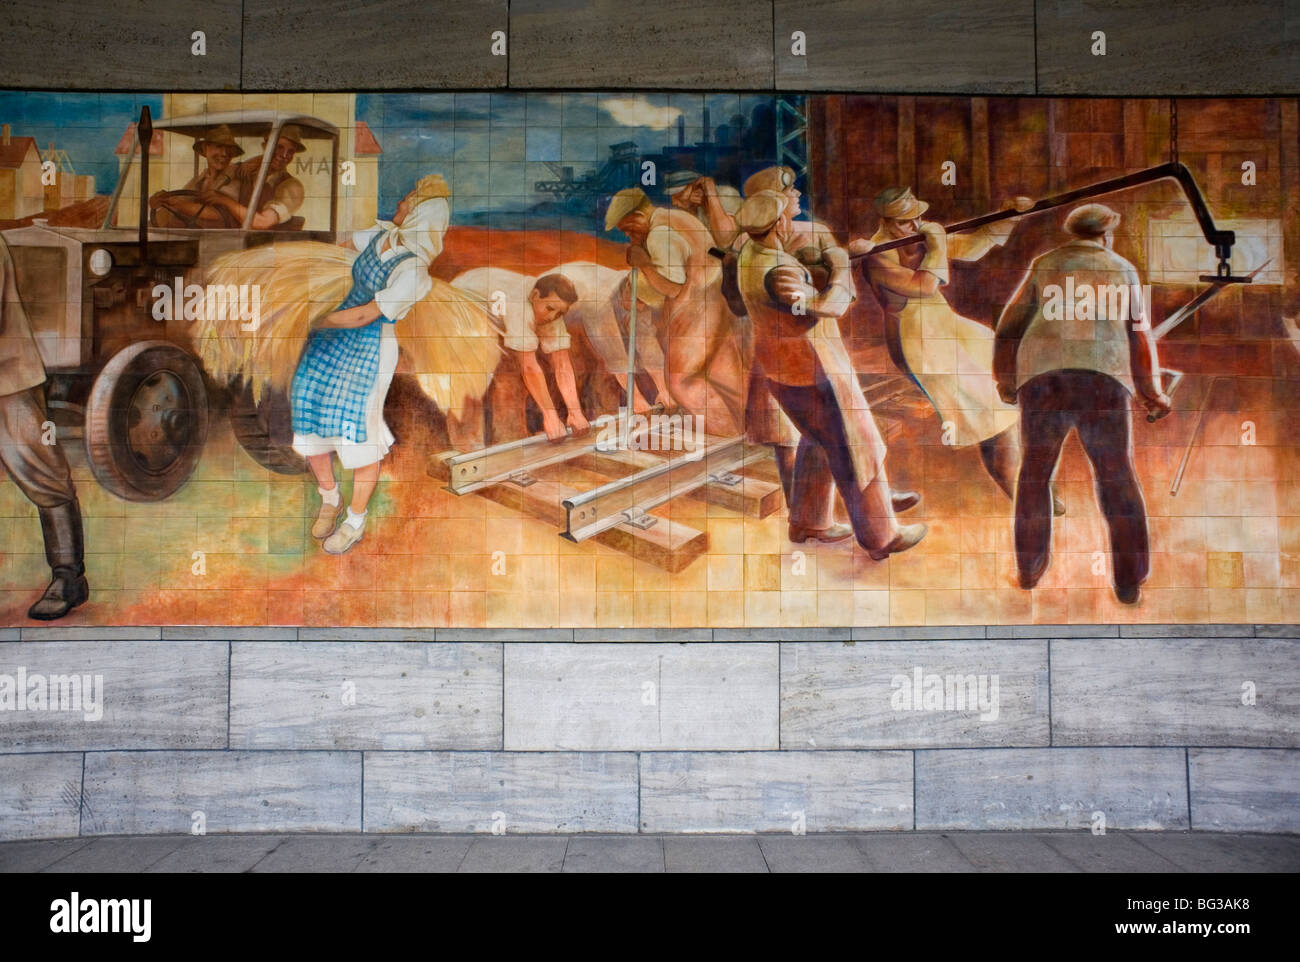 Berlin 2009 travailleurs murale le socialisme soviétique socialiste de masse de la paix de l'industrie des finances Ministère de l'air 1989 Allemagne DDR positive unifiée Banque D'Images